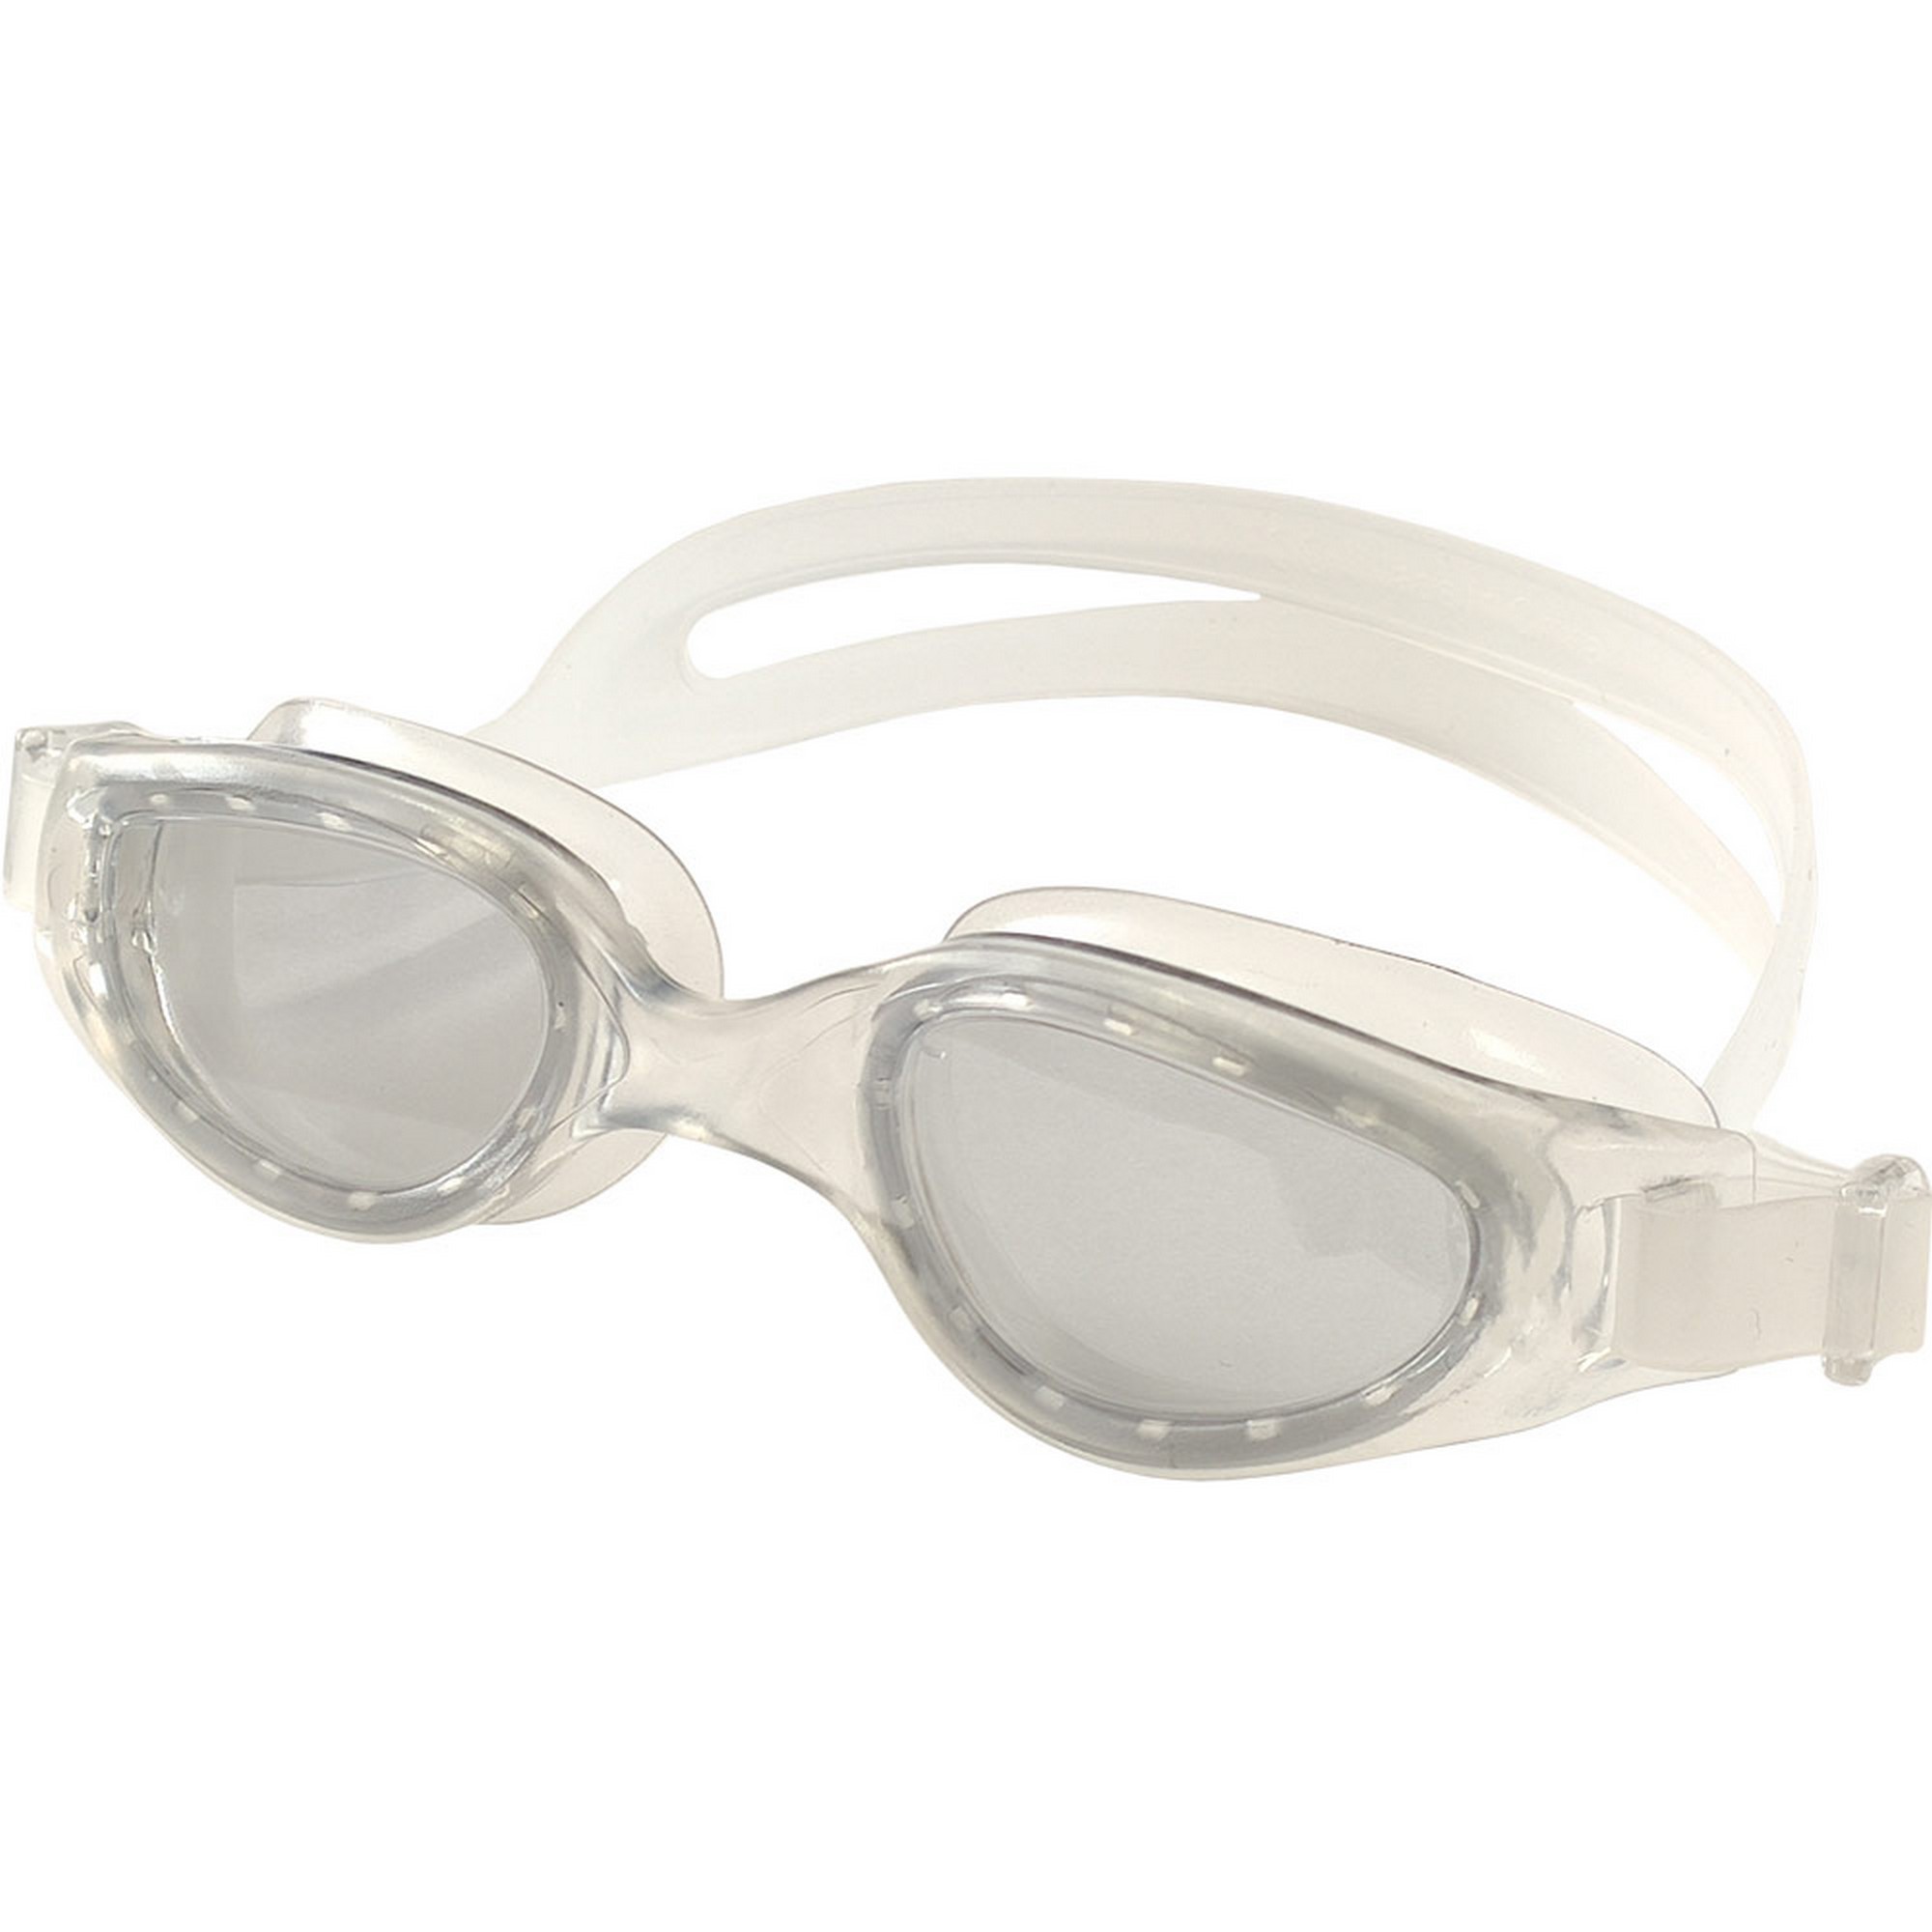 Очки для плавания взрослые Sportex E39671 прозрачный,  - купить со скидкой